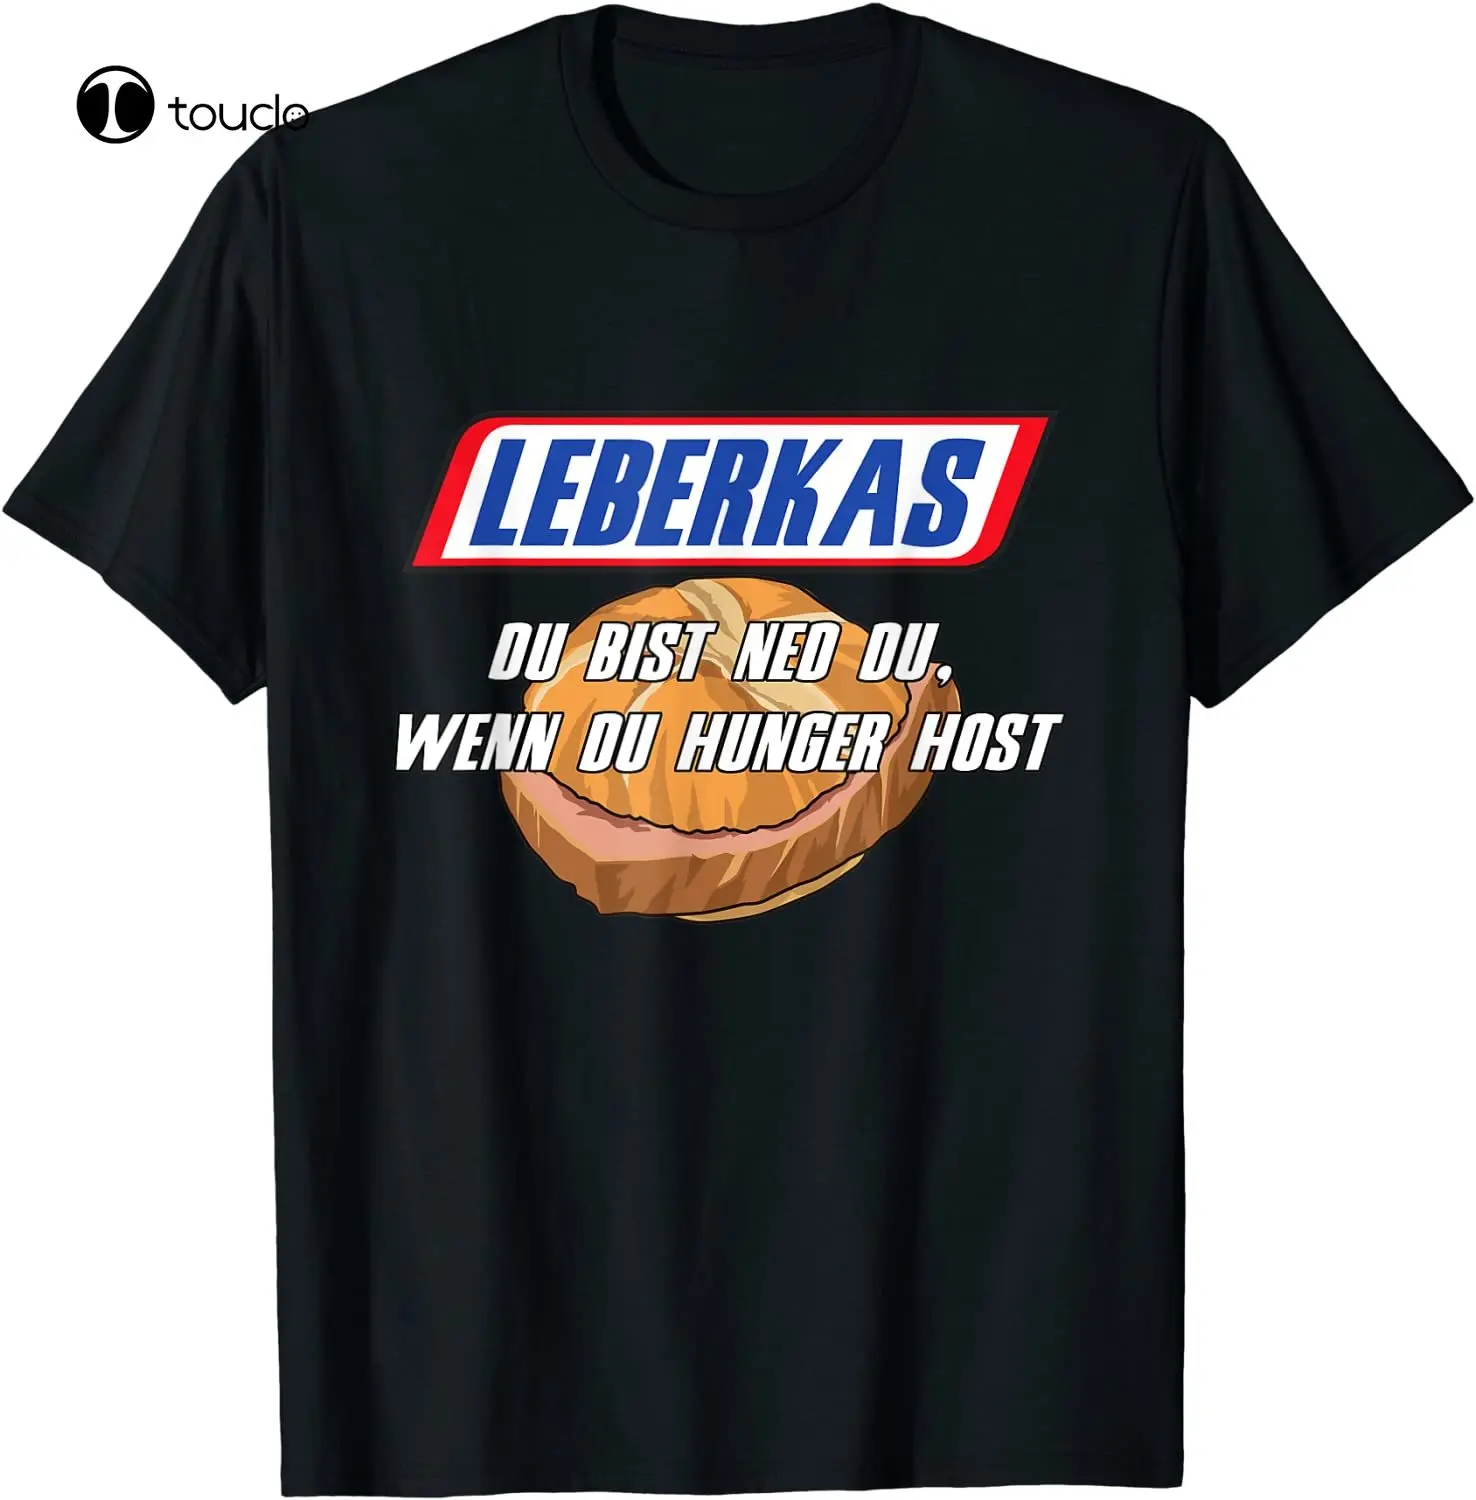 

T-Shirt With German Text "Leberkas - Du Bist Ned Du Wenn Du Hunger Host" Tee Shirt